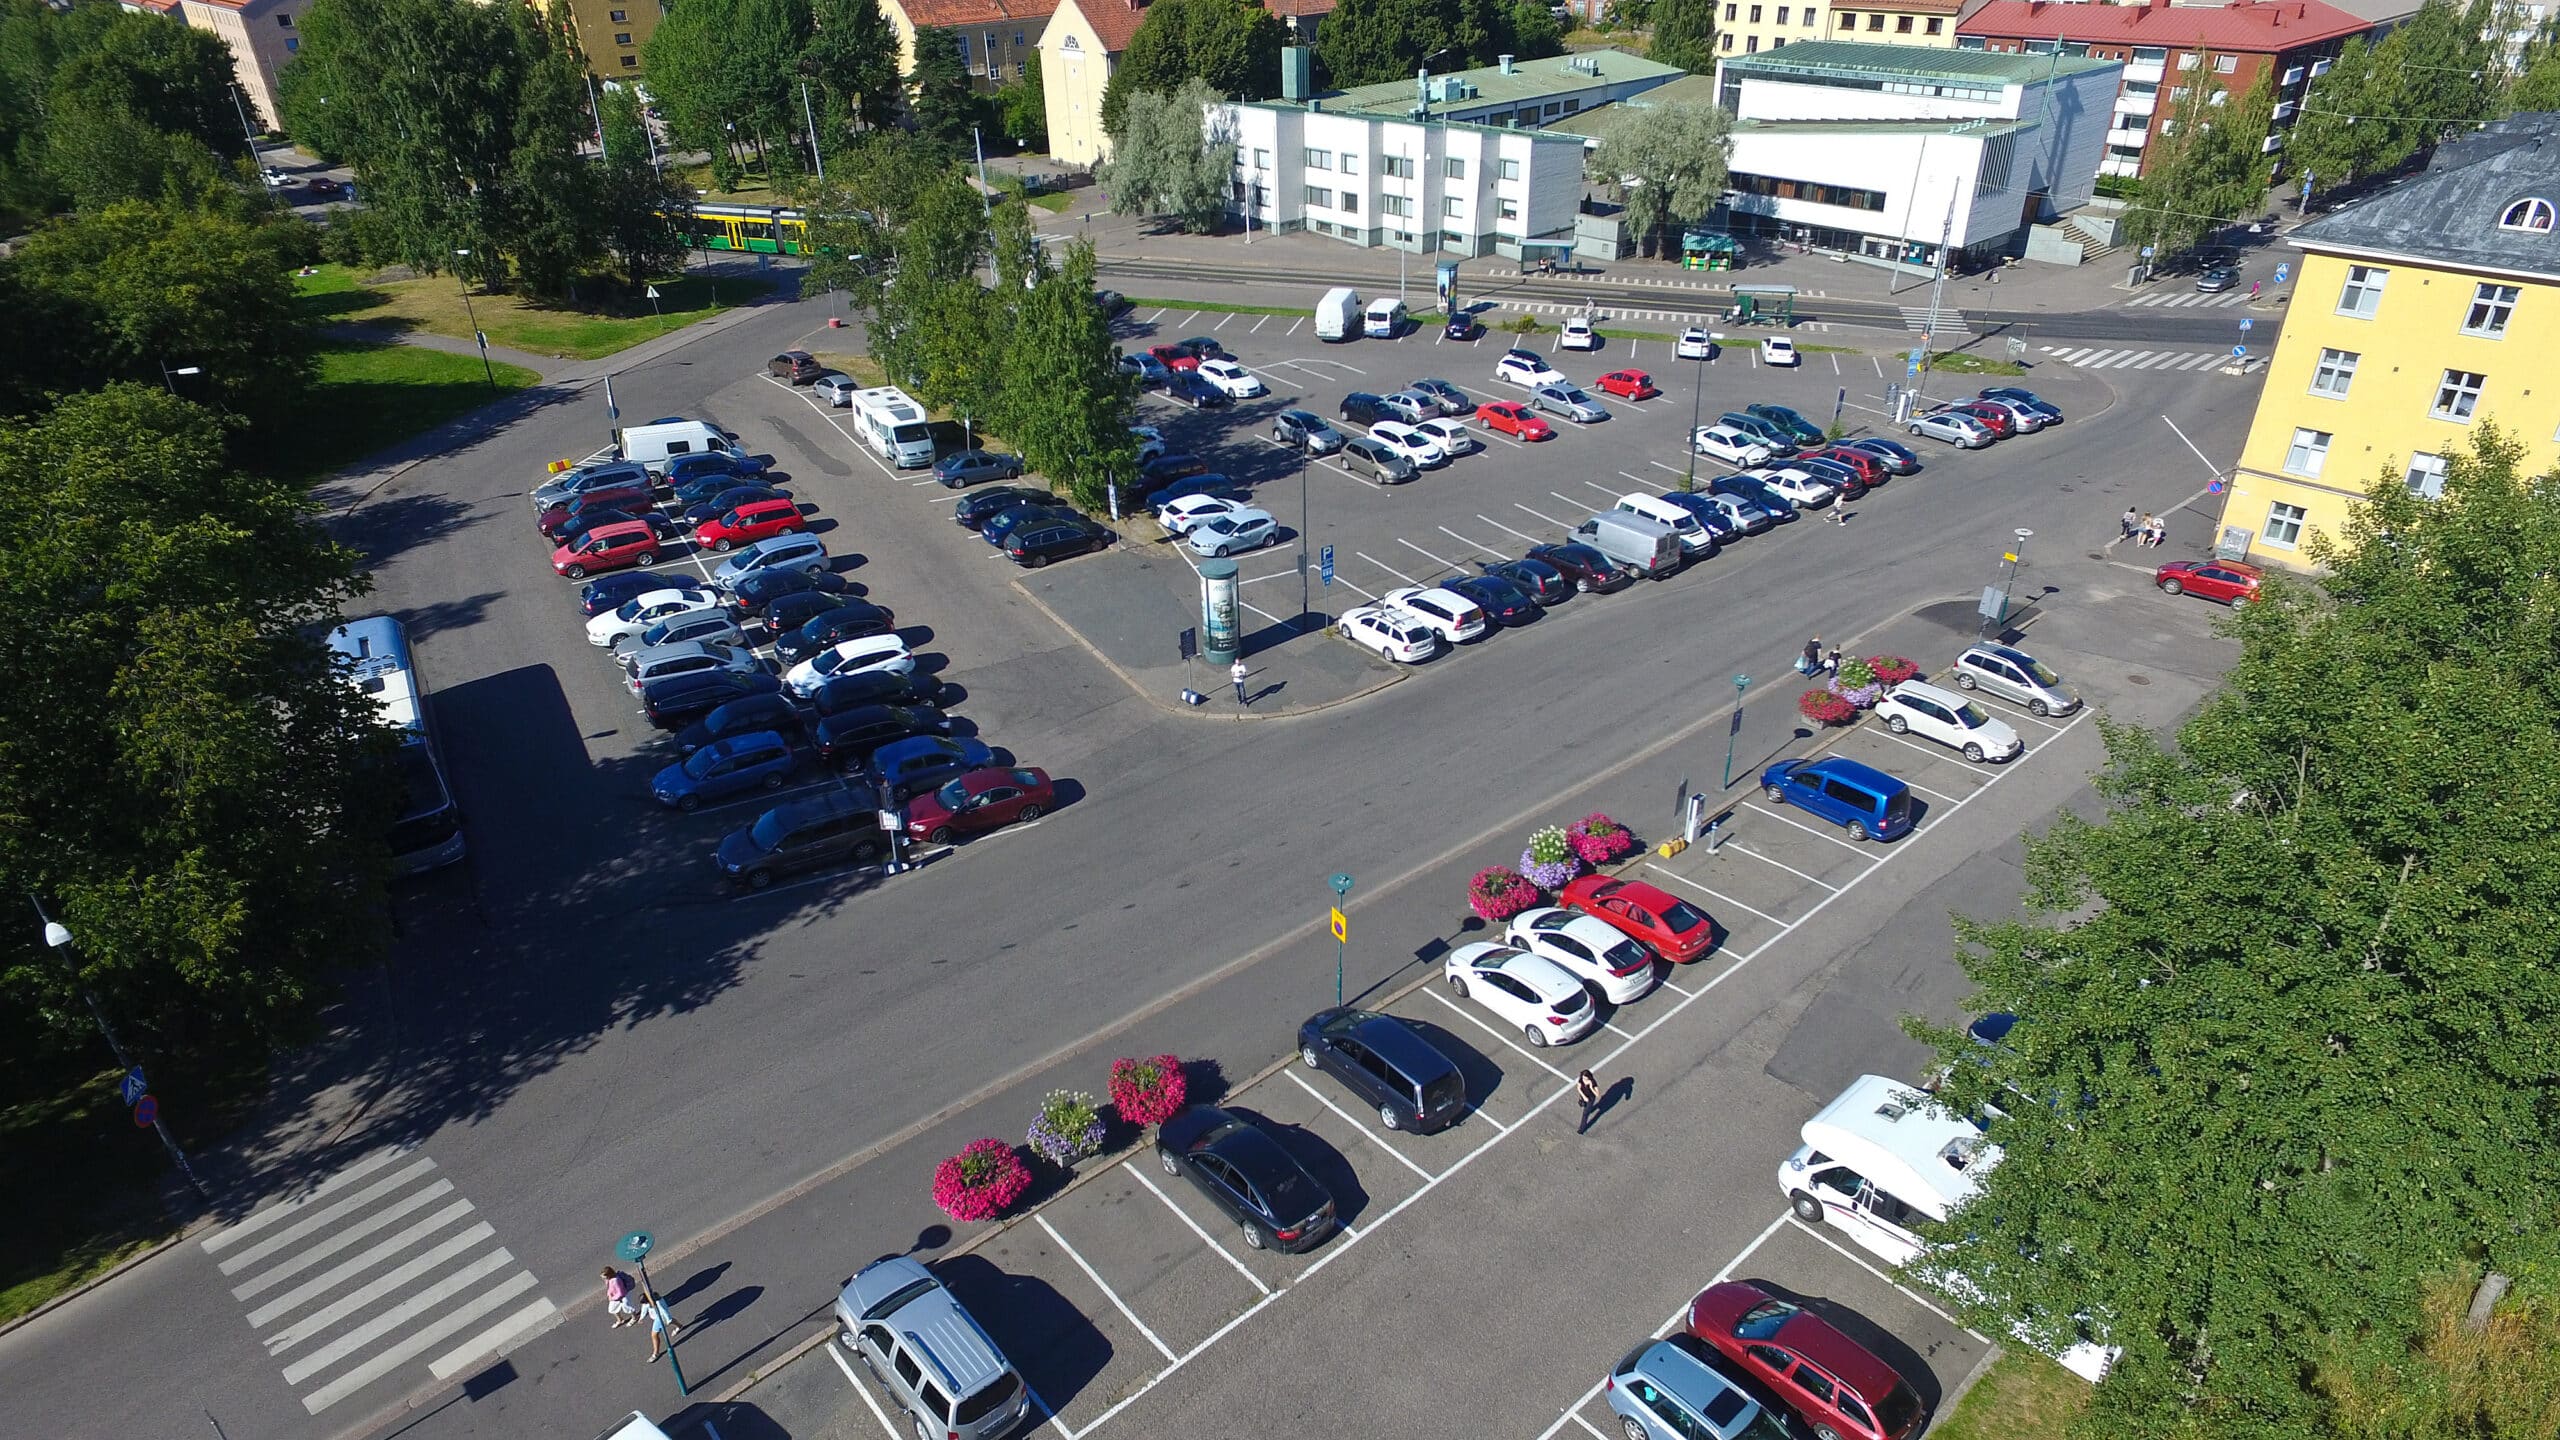 P-Linnanmäki Helsinki, autoja alaparkissa, taustalla puita ja rakennuksia